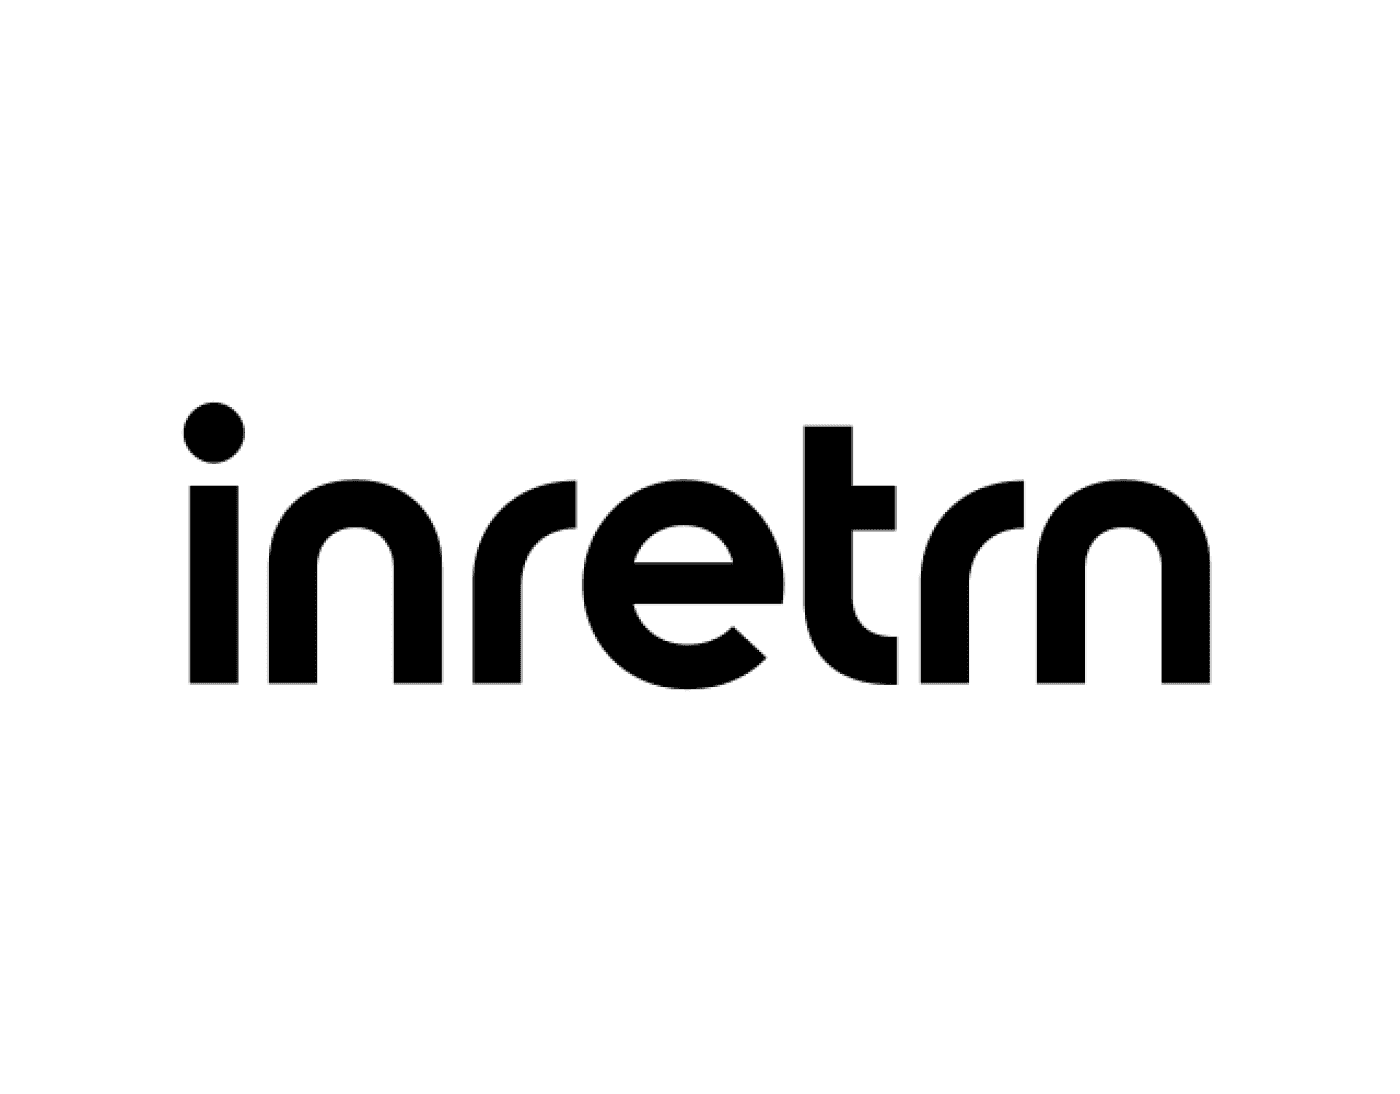 inretrn-640x500-01.png